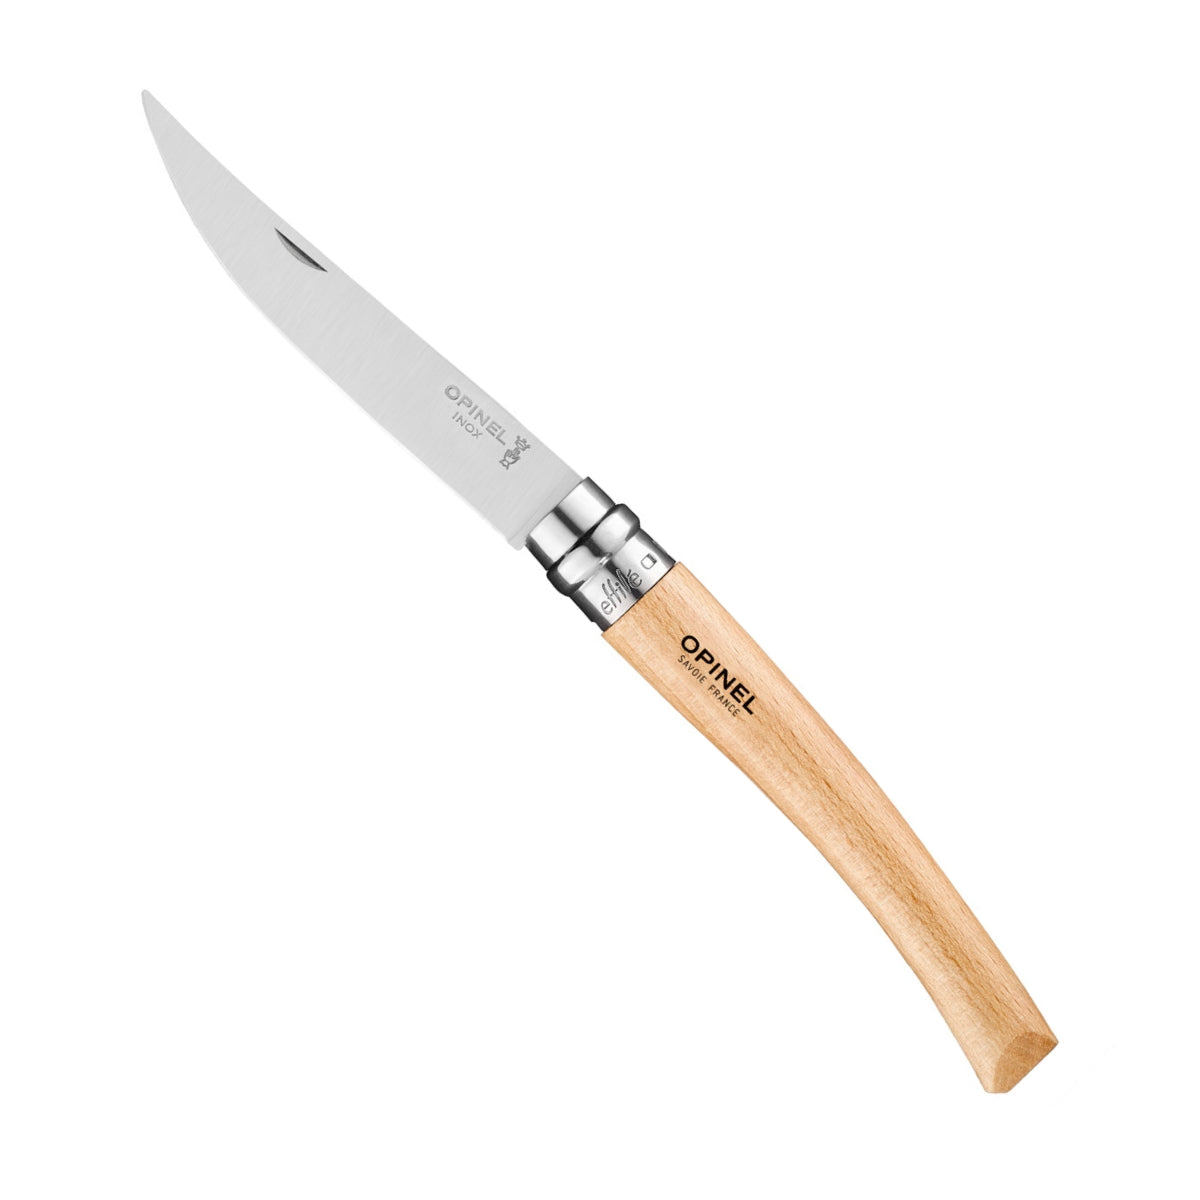 Opinel - Couteau lame effilée manche hêtre N°10 : Couteau outdoor